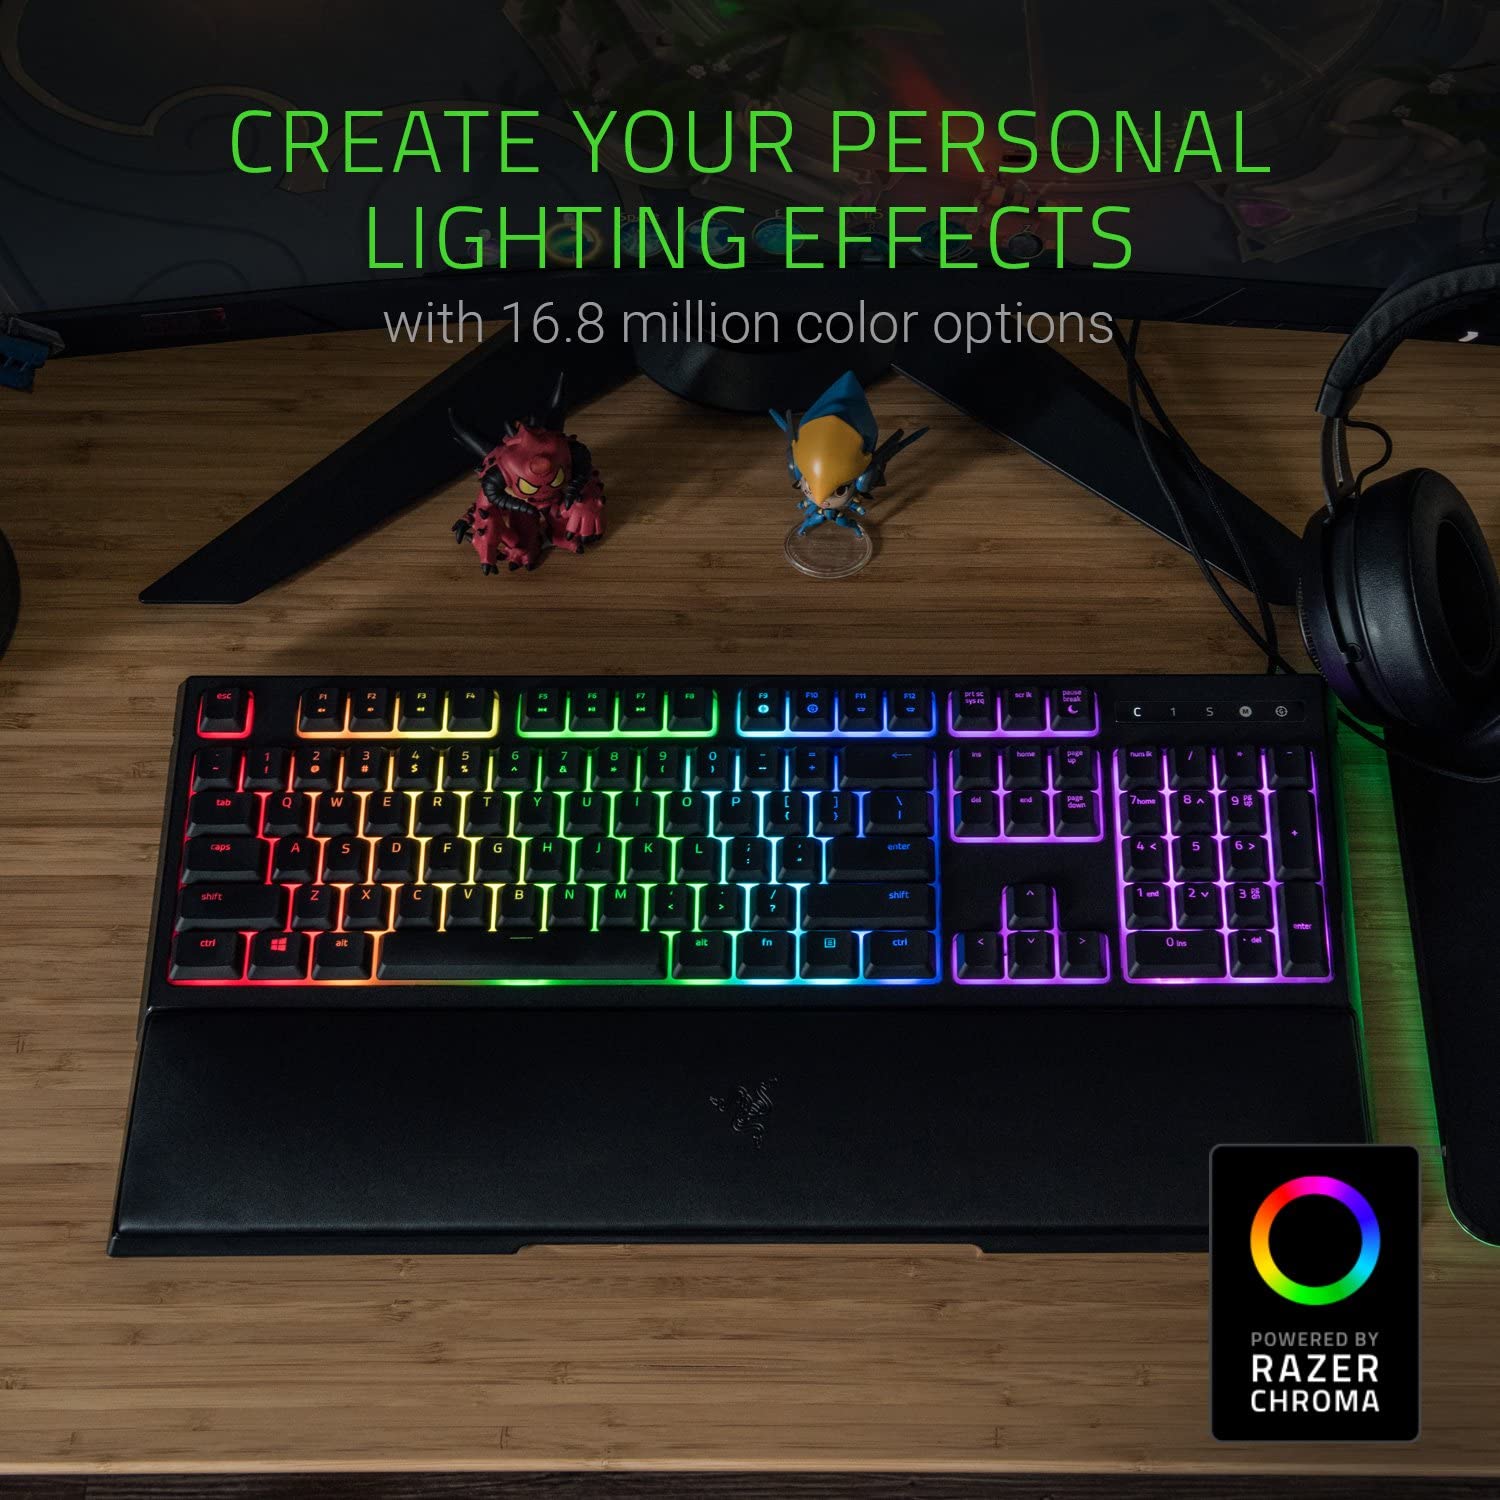 صفحه کلید گیمینگ ریزر Razer Ornata Chroma Multi color Gaming Keyboard - ارسال ۱۰ الی ۱۵ روز کاری